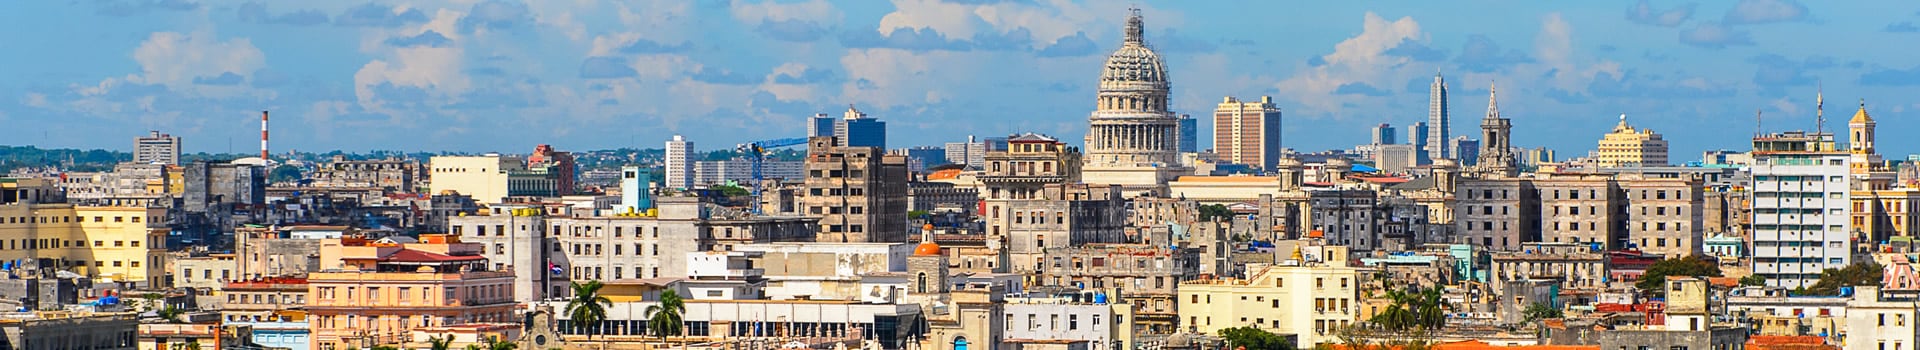 Madrid - Havana